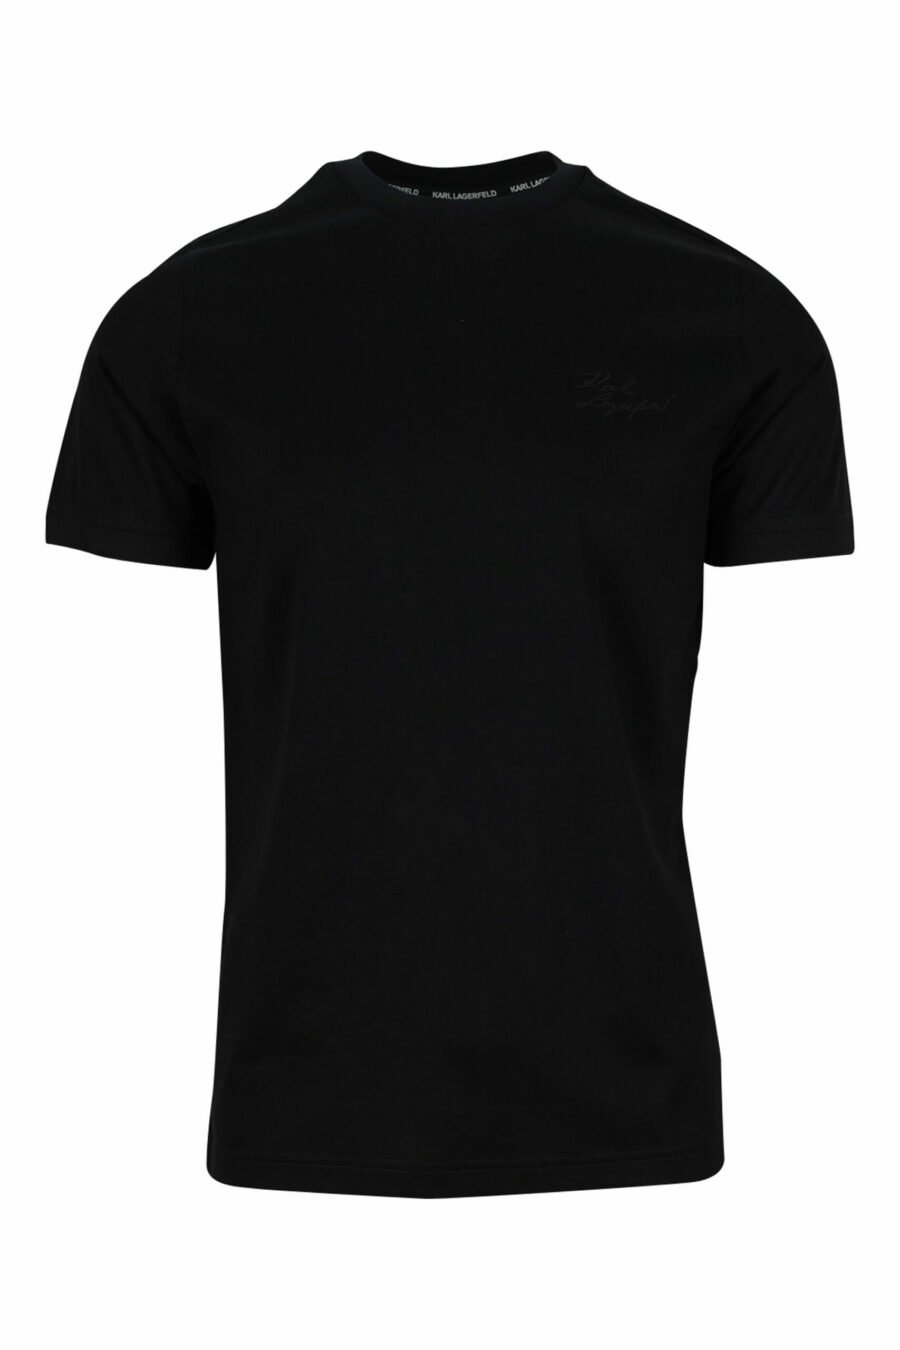 Schwarzes T-Shirt mit schwarzem Minilogue - 4062226400473 skaliert